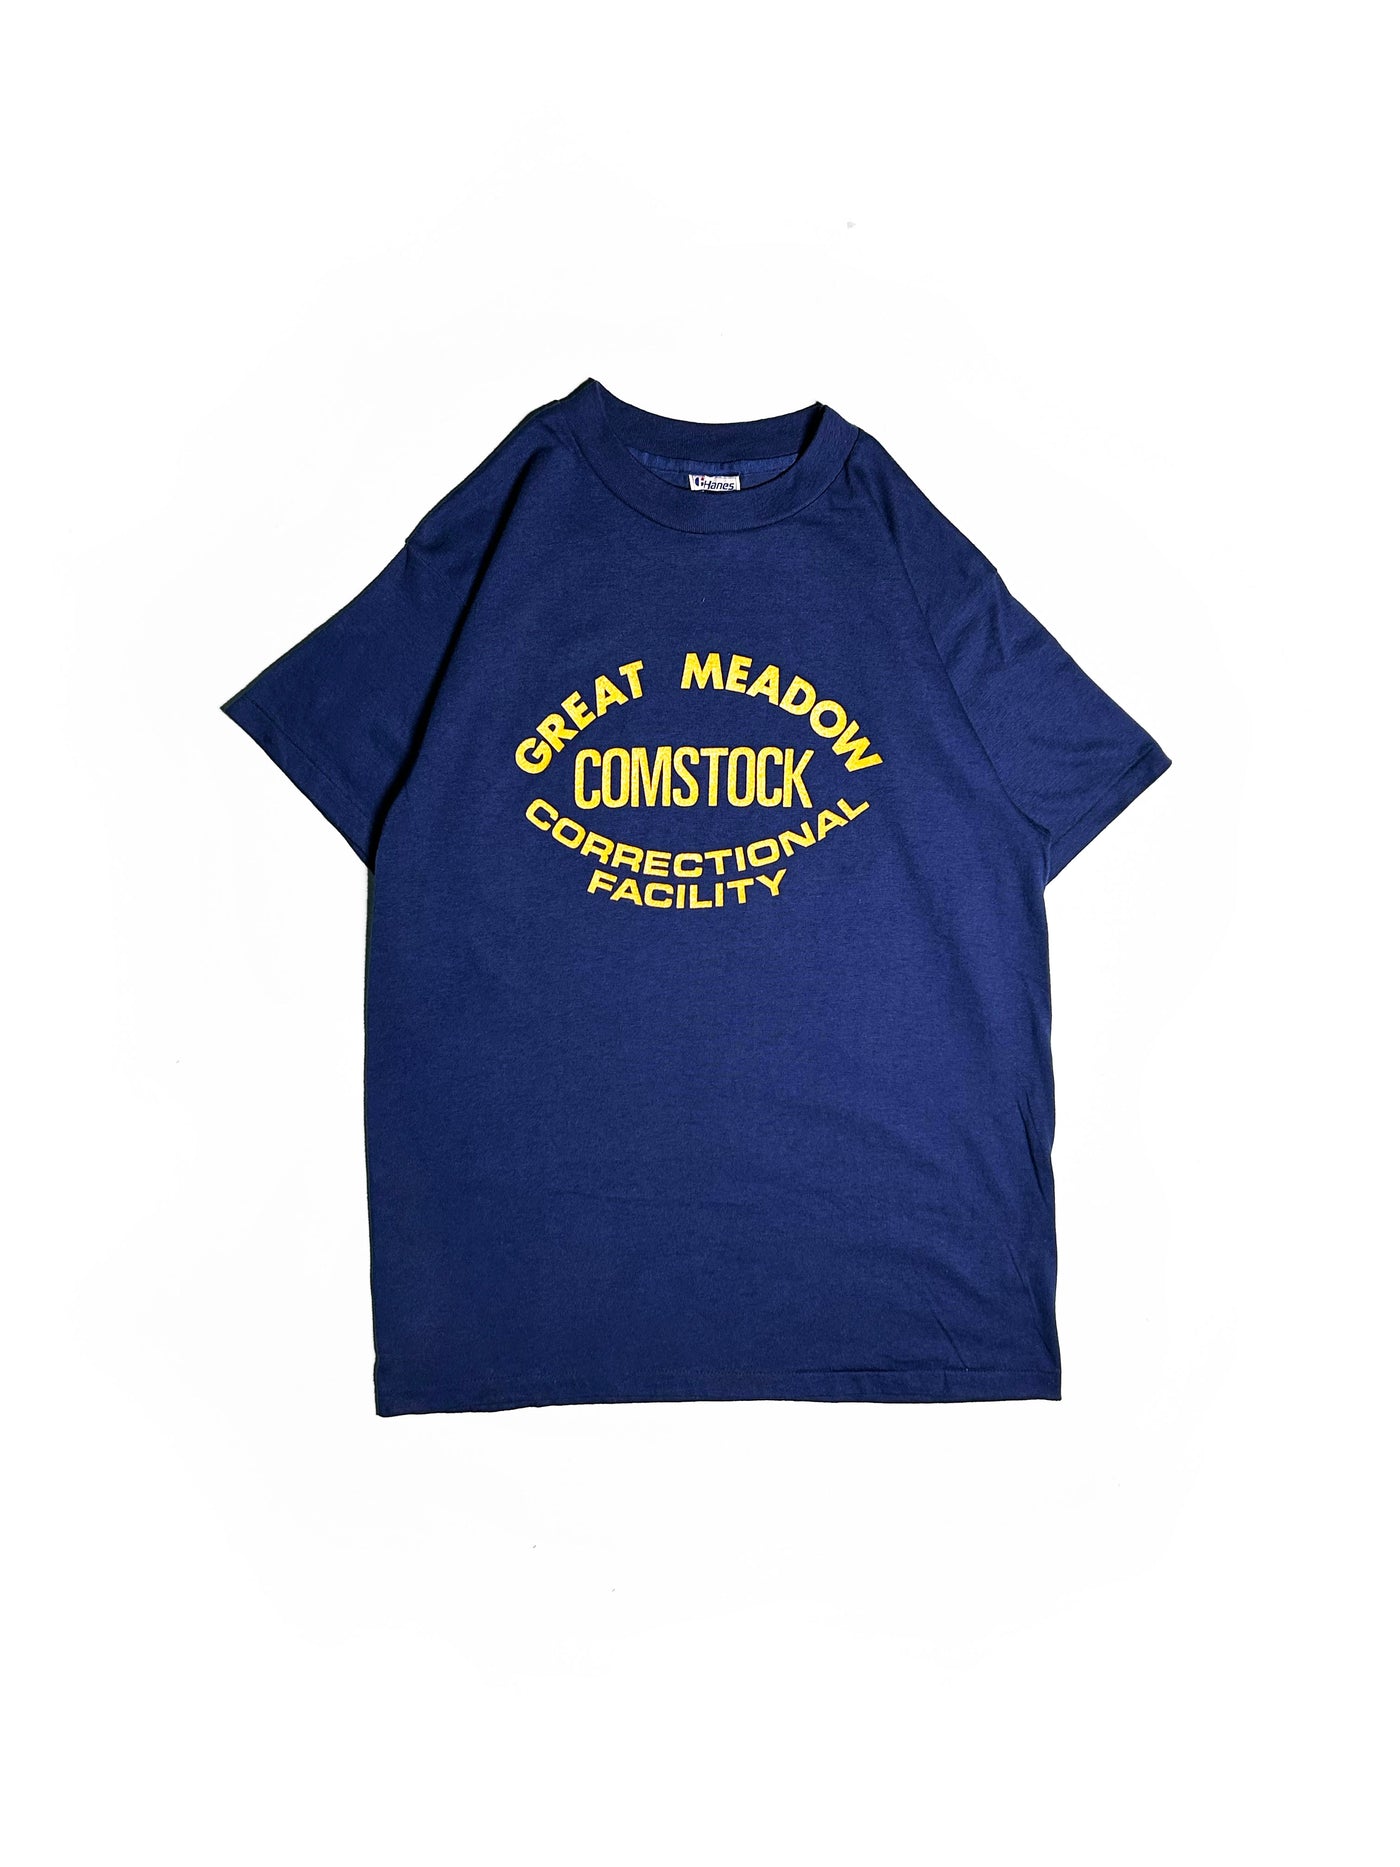 Vintage 80s Comstock, NY Correctional Facility T-Shirt